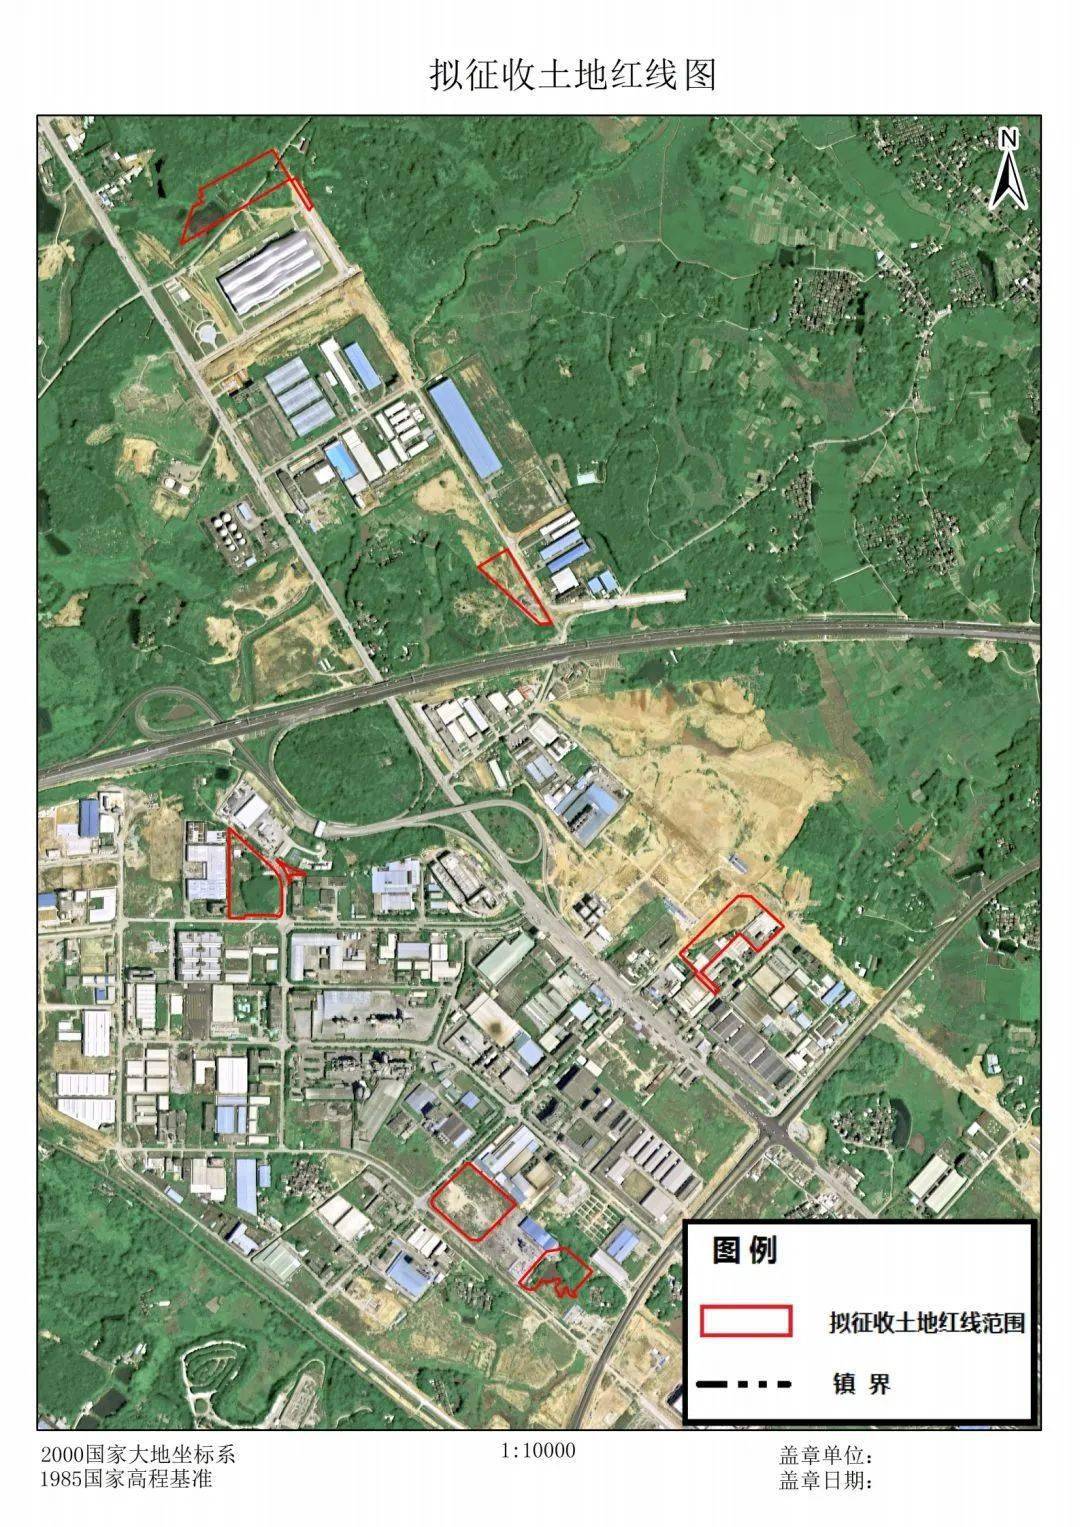 资料来源于阳江市政府网此次征收土地用途为城镇建设用地位置分别位于